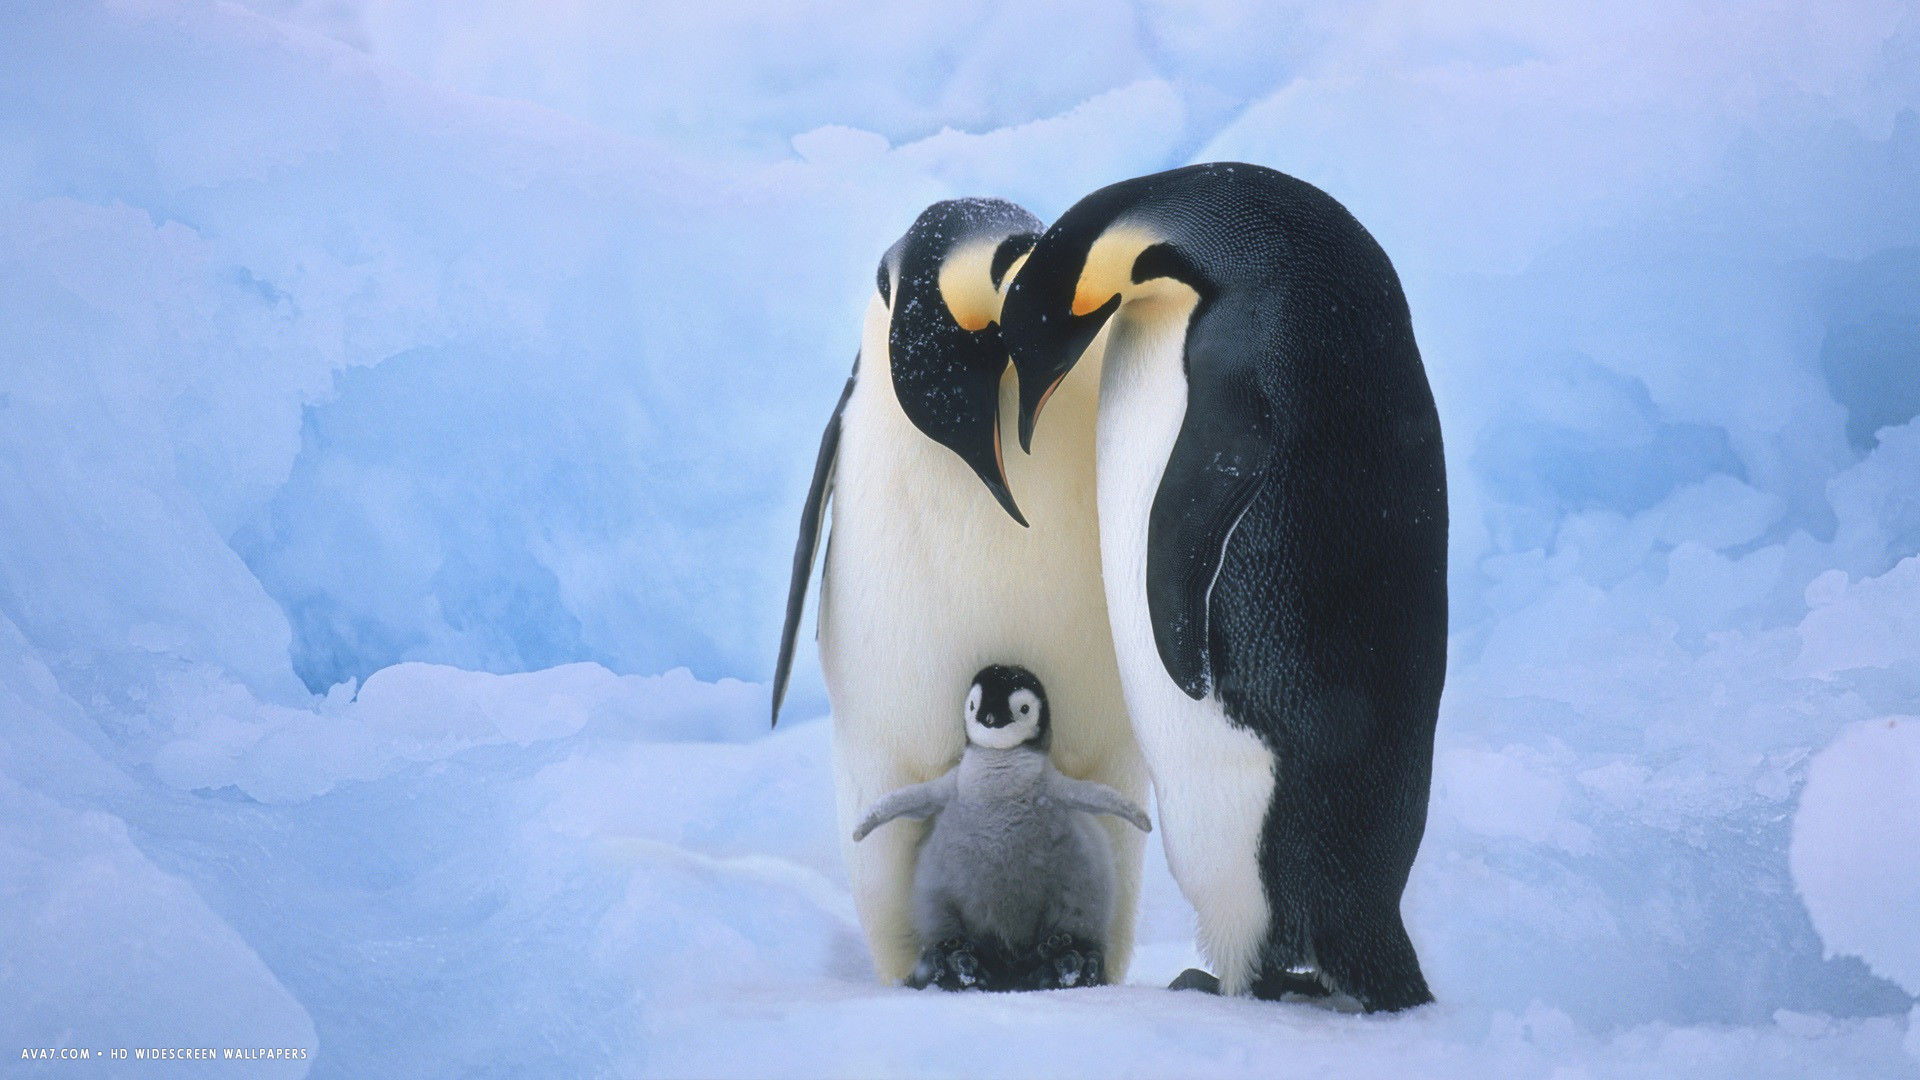 Penguin family wallpaper, Adorable penguins, 1920x1080 Full HD Desktop